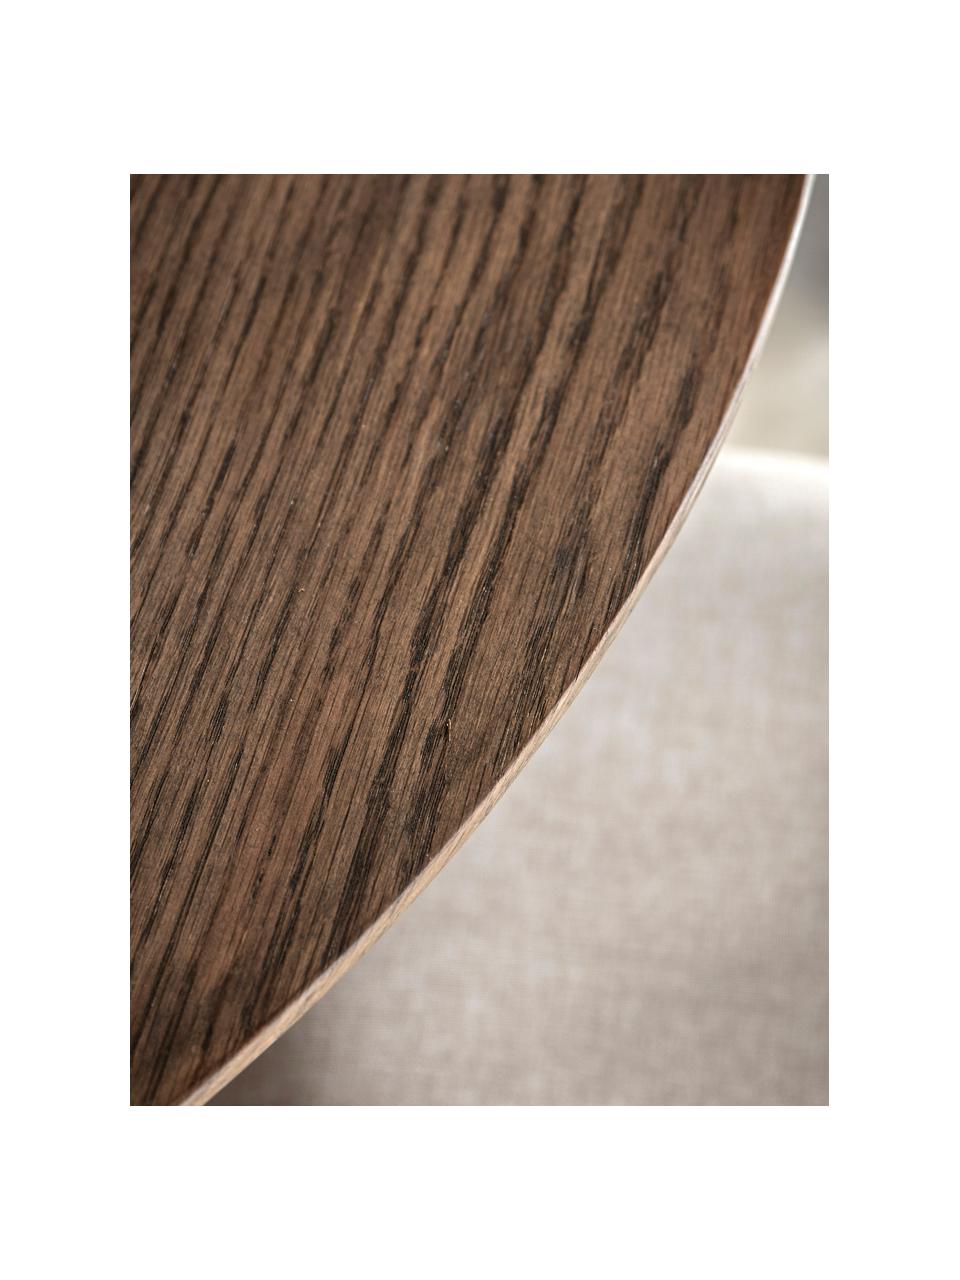 Kulatý dřevěný jídelní stůl Hatfield, Ø 110 cm, Dubové dřevo, tmavě lakované, Ø 110 cm